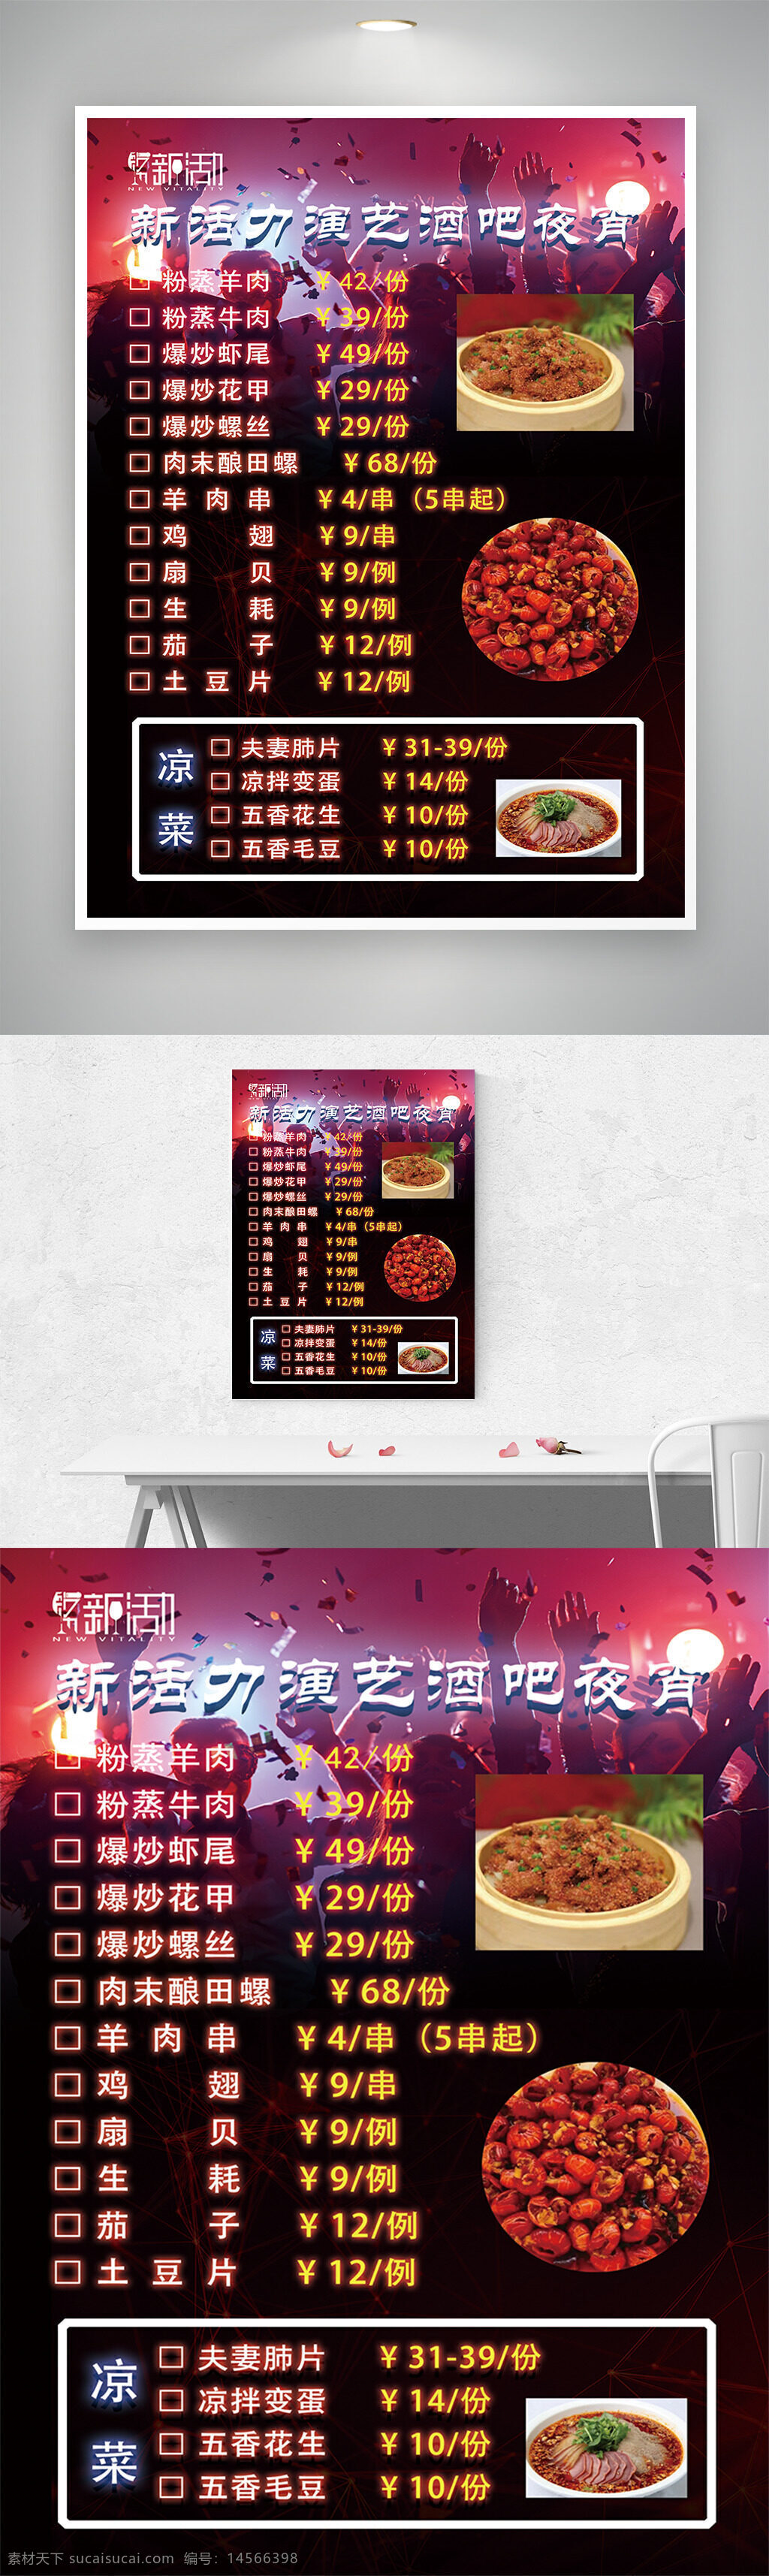 酒吧 餐吧 烧烤 餐厅 菜单 设计 广告设计 海报设计